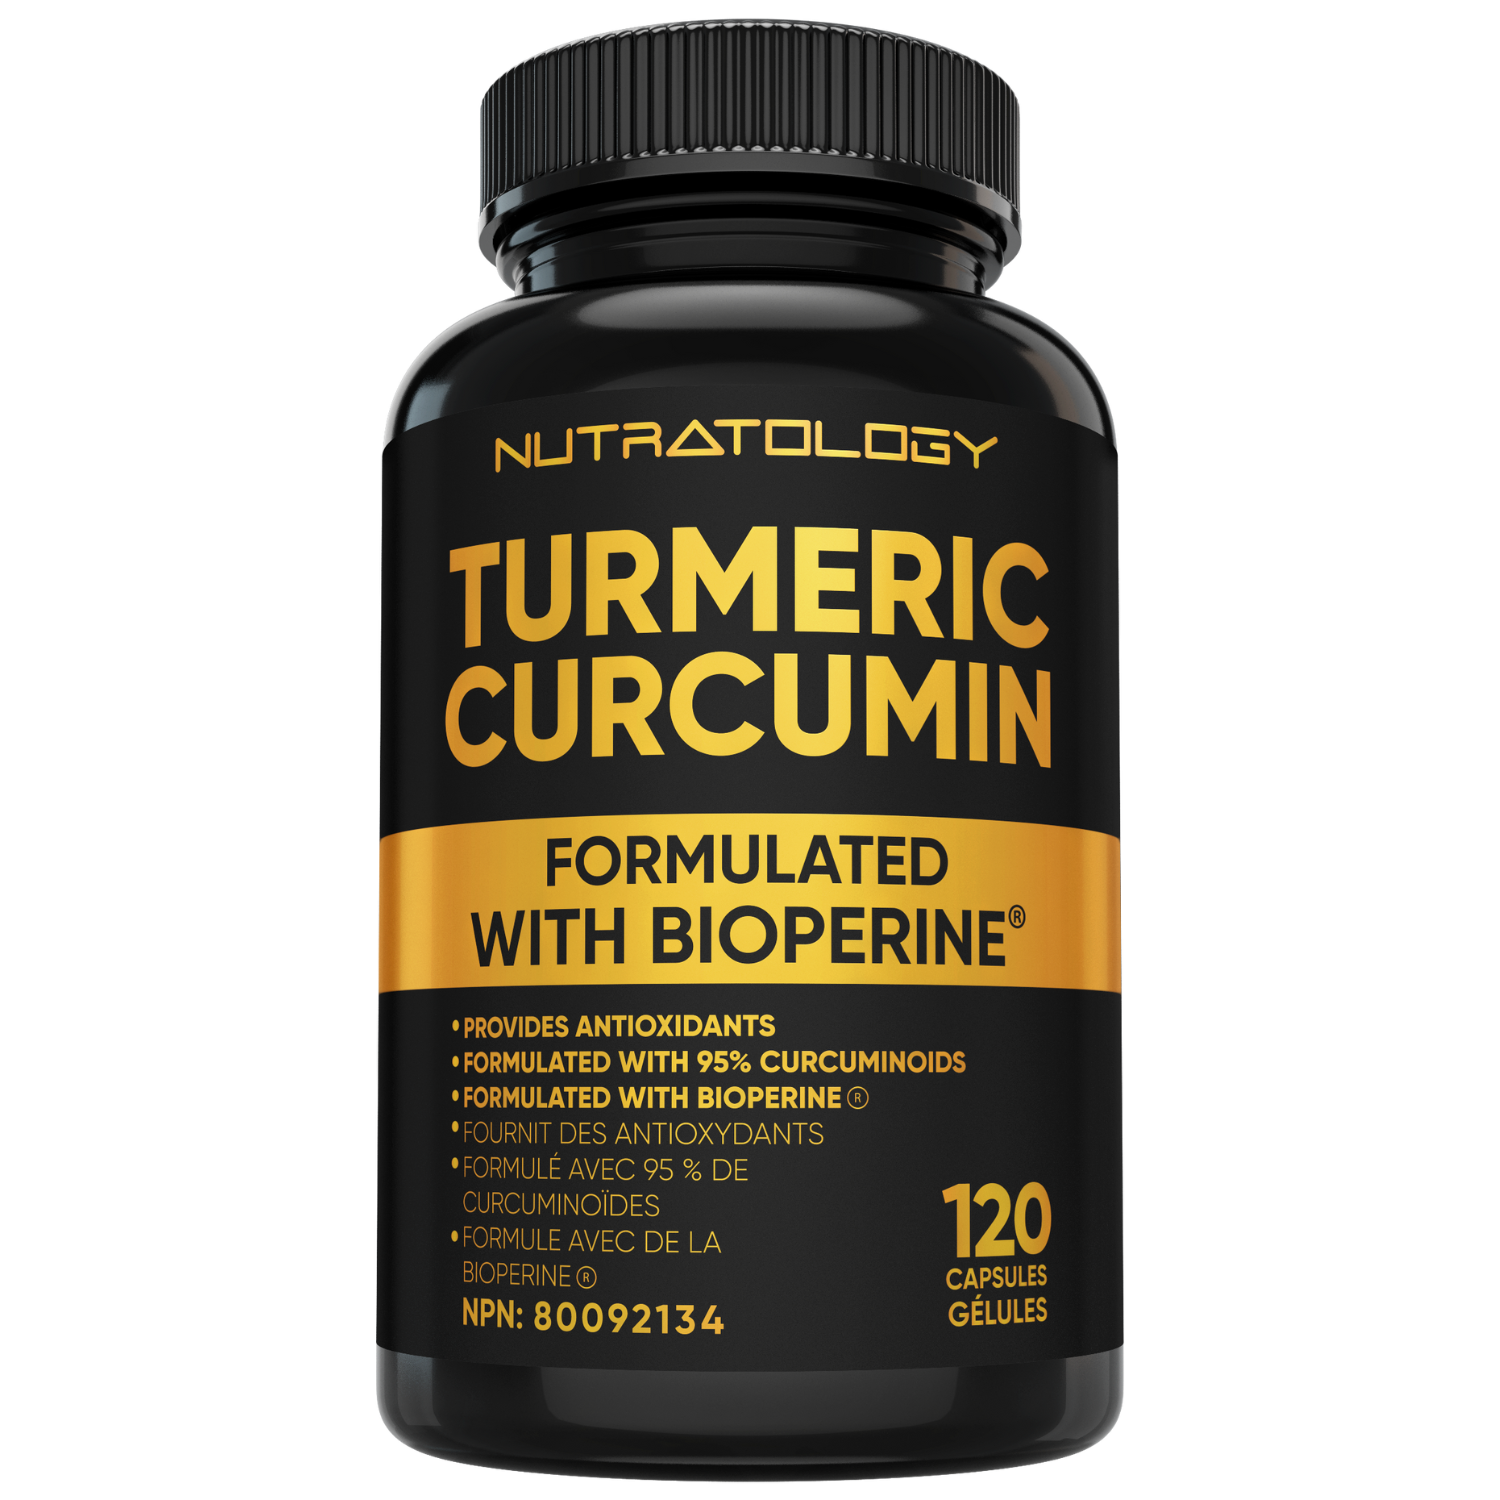 Nutratology Organic Turmeric Curcumin - 120 Capsules